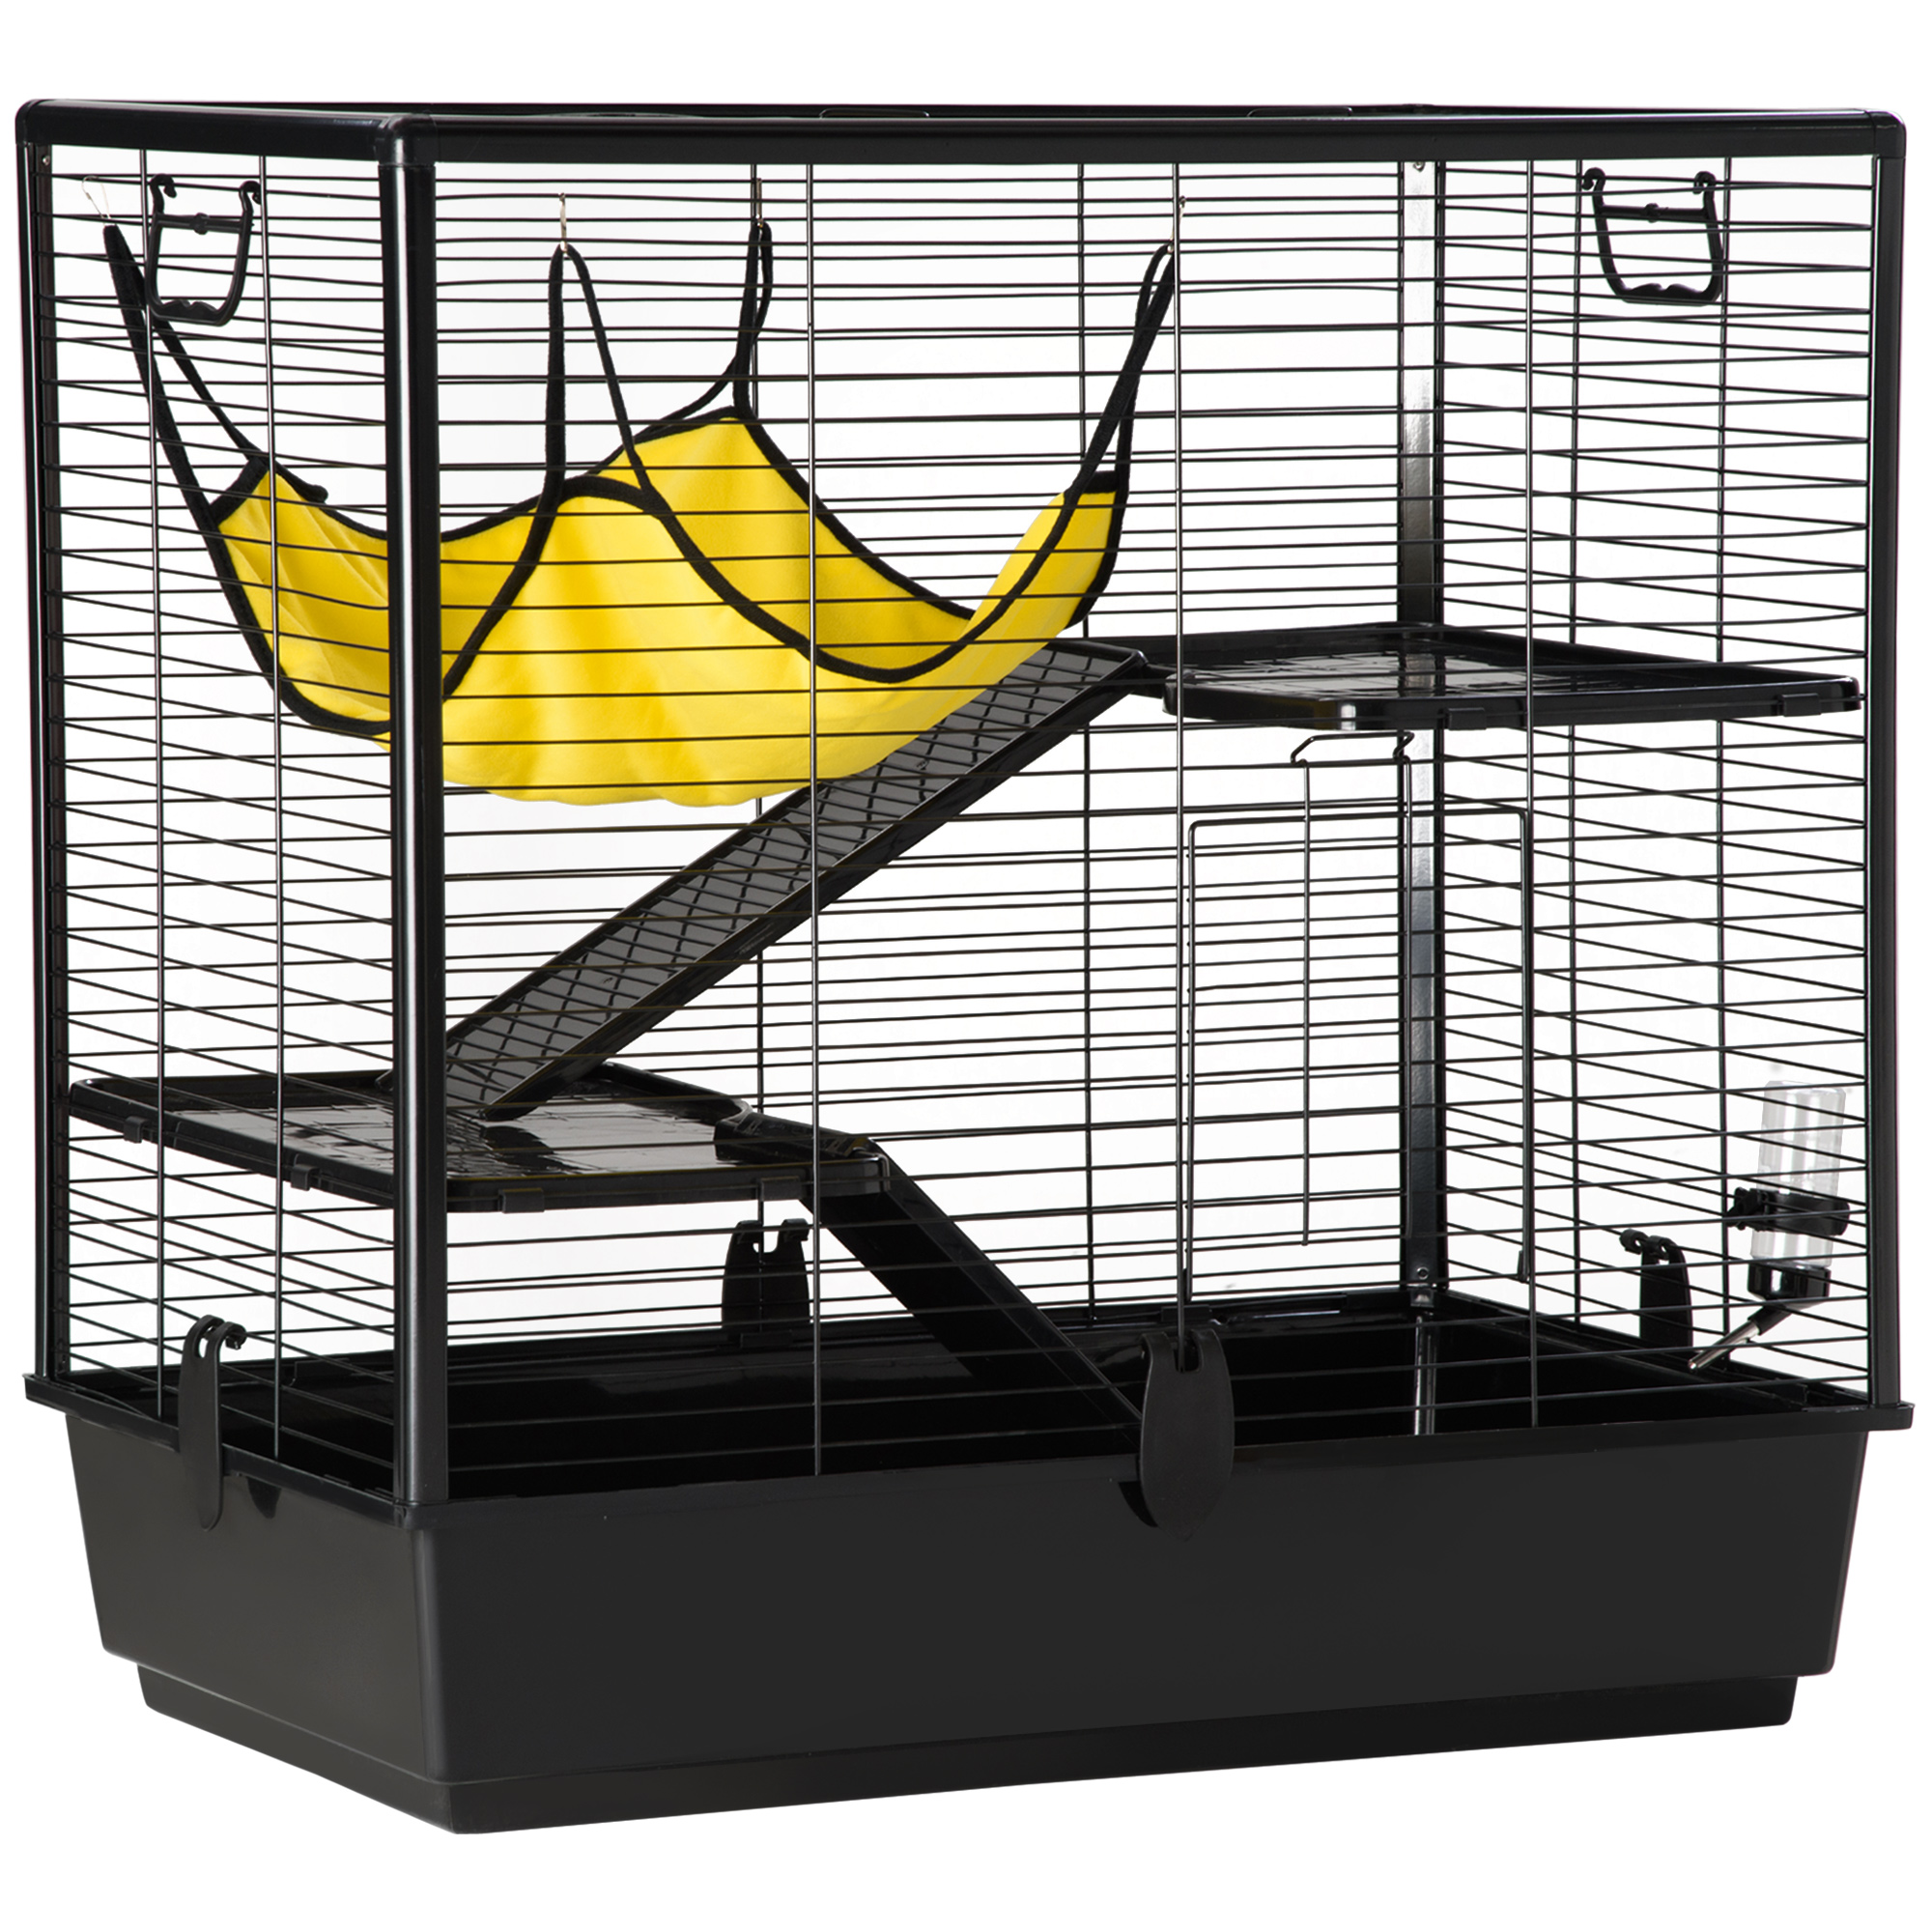 Cage pour rat - Élevage de rats